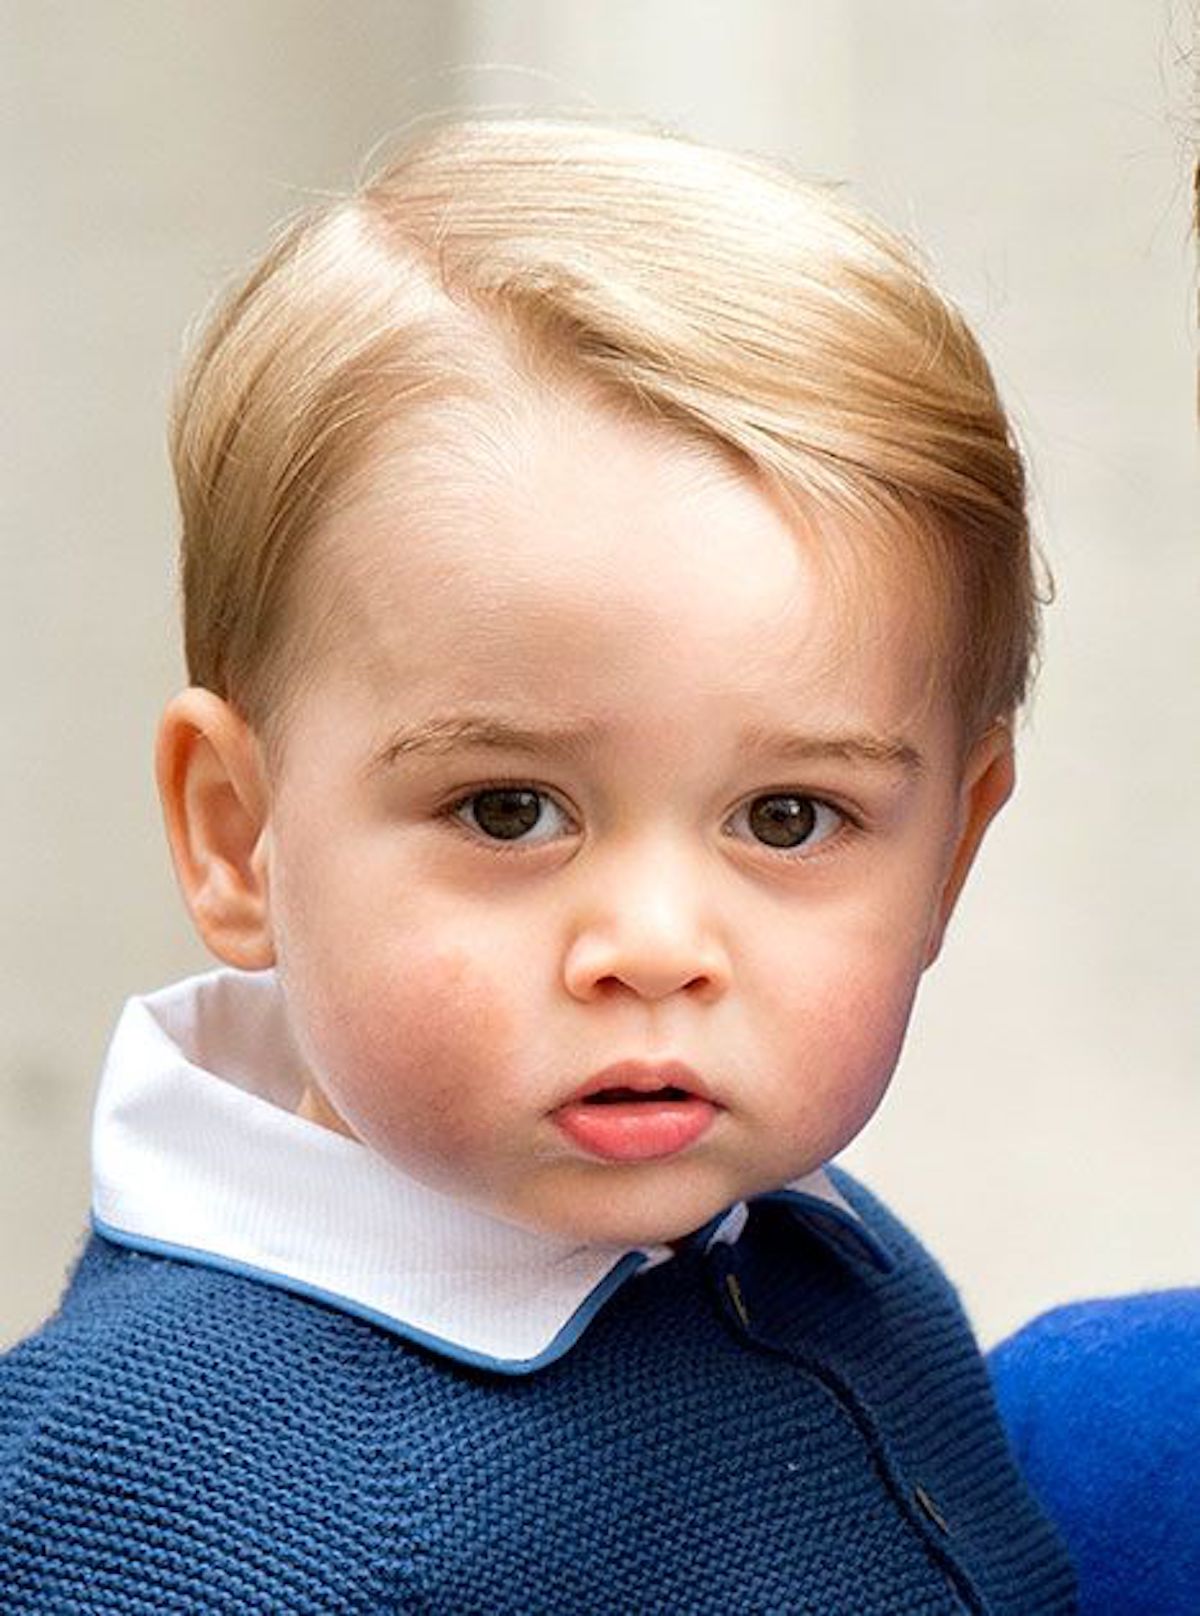 Baby george principe compleanno foto 8 anni